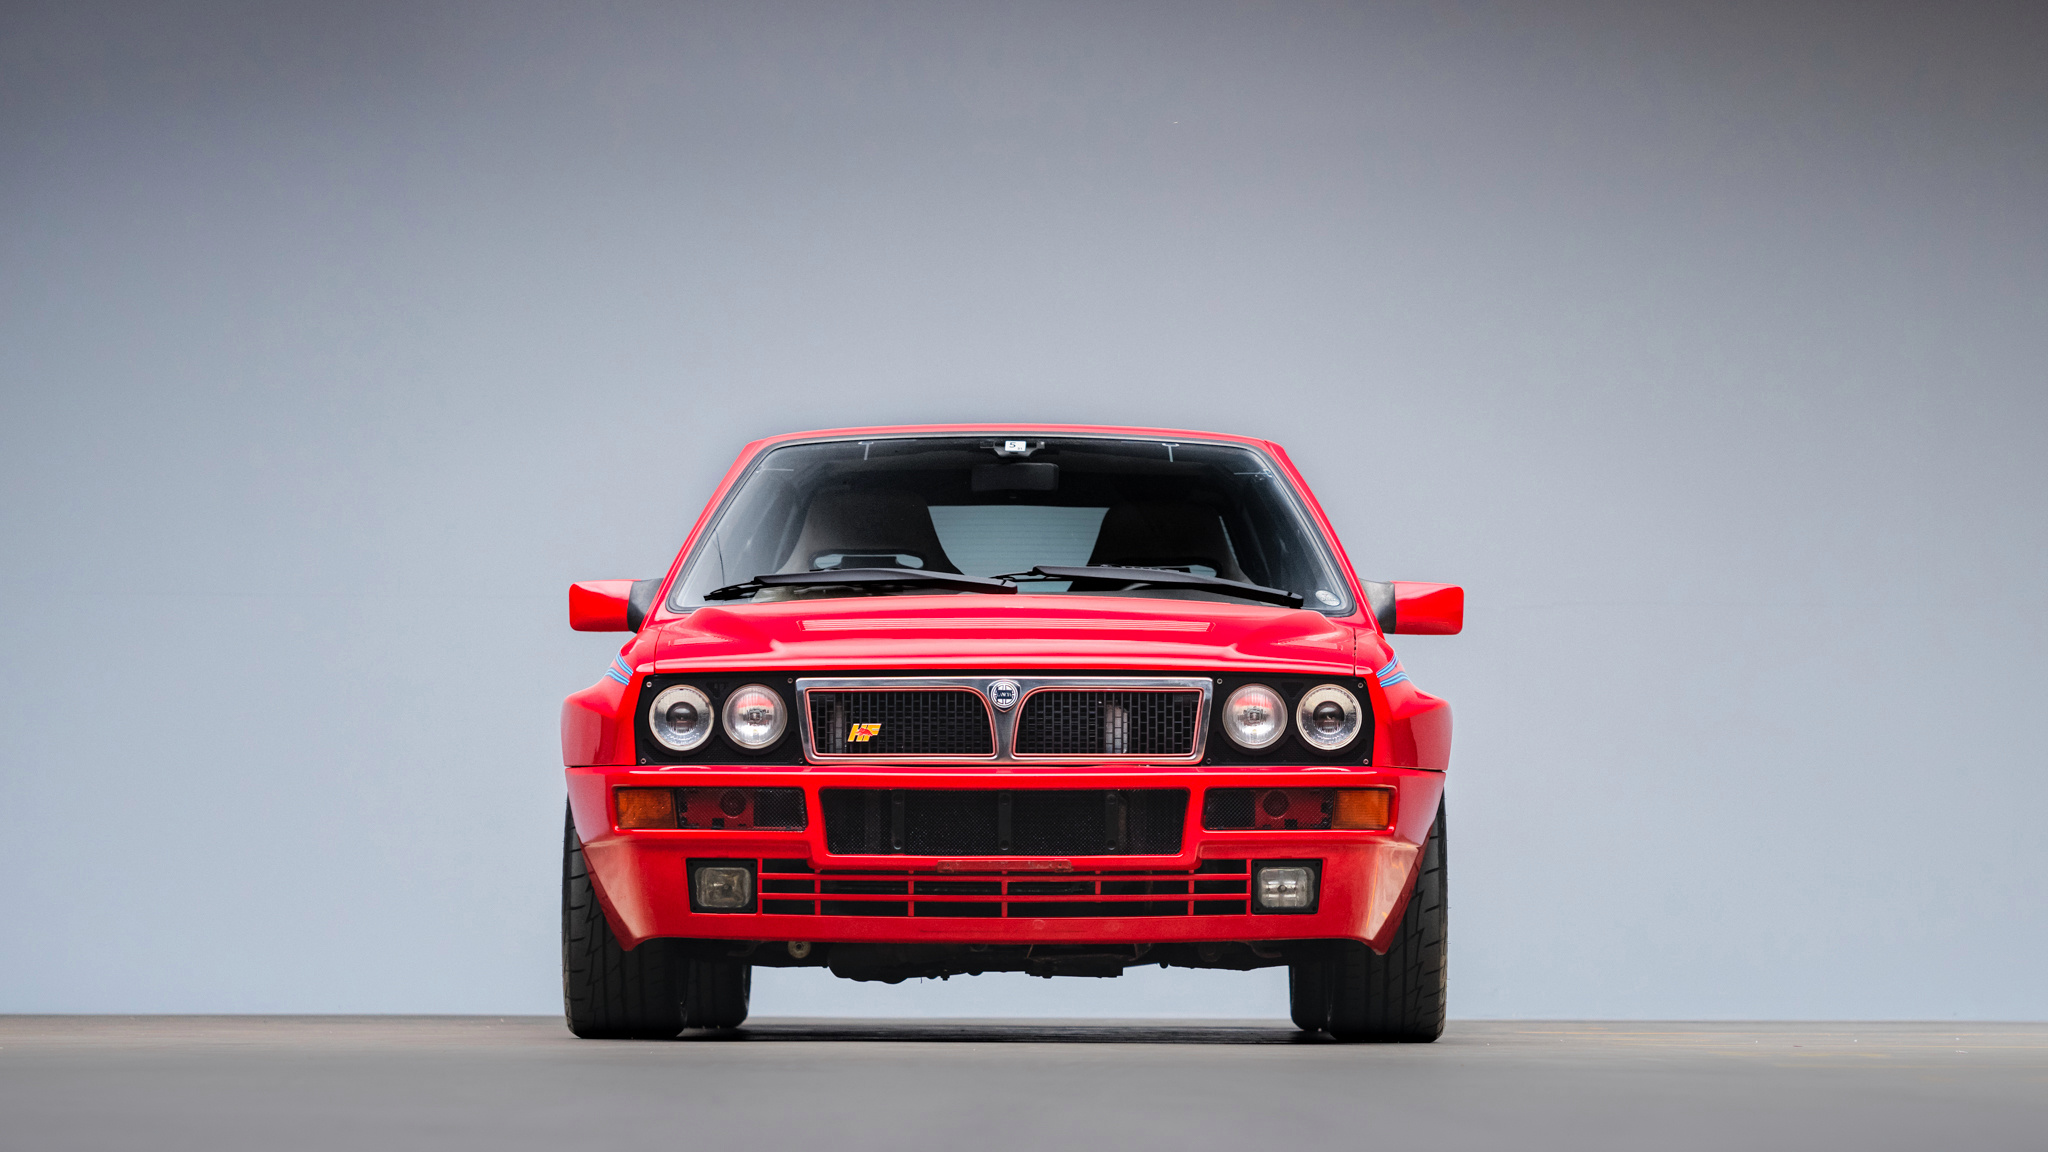 Lancia Delta Integrale Evo 2, Iconic rally car, Classic design, Auto heritage, 2050x1160 HD Desktop